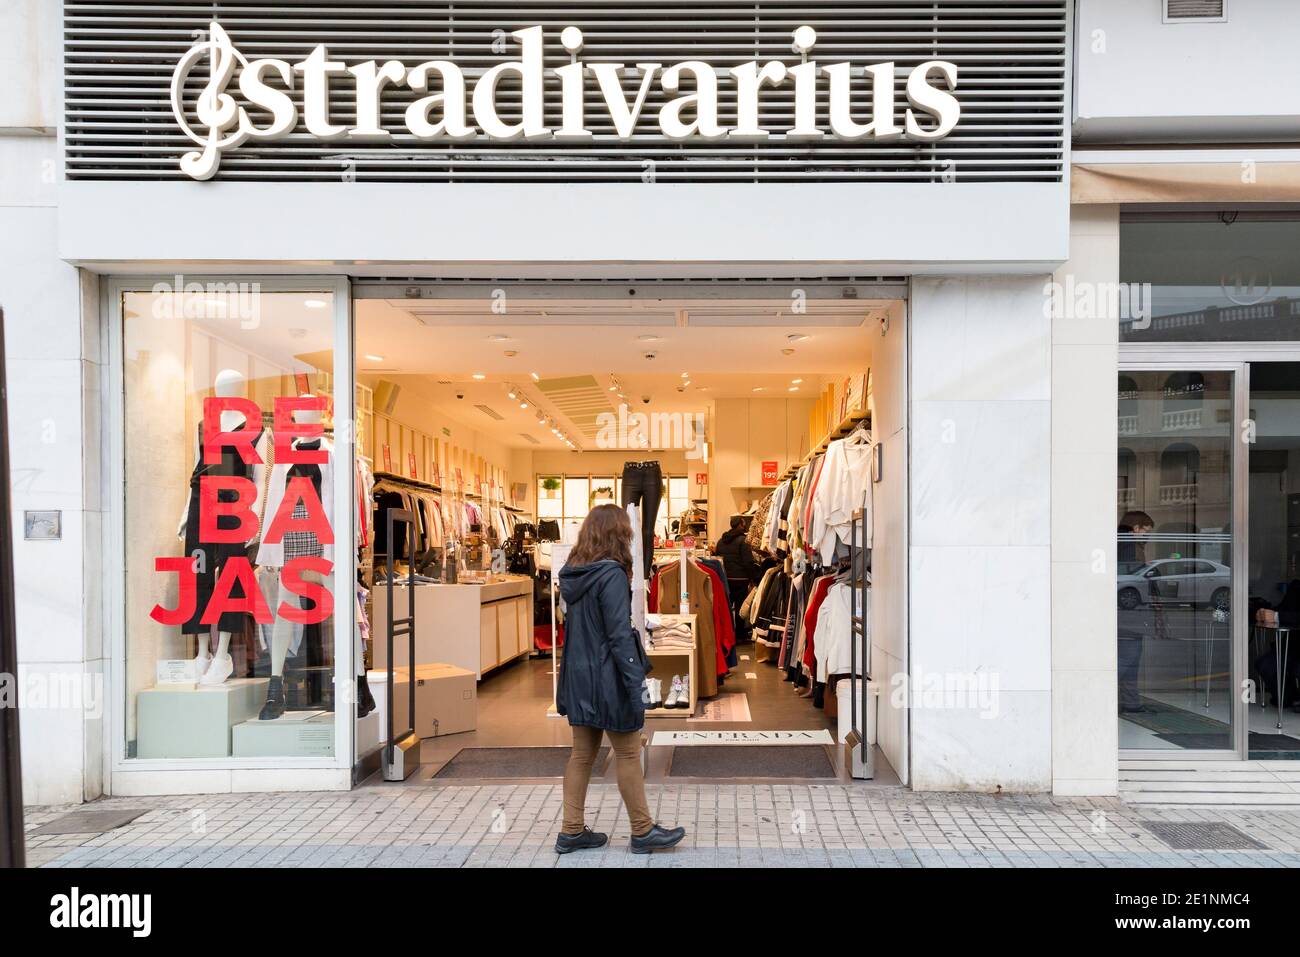 Une femme se tient devant la porte du magasin Stradivarius pendant les  ventes d'hiver.dans les dernières semaines de Noël, les cas de Covid19 à  Valence ont augmenté, ce qui a entraîné le